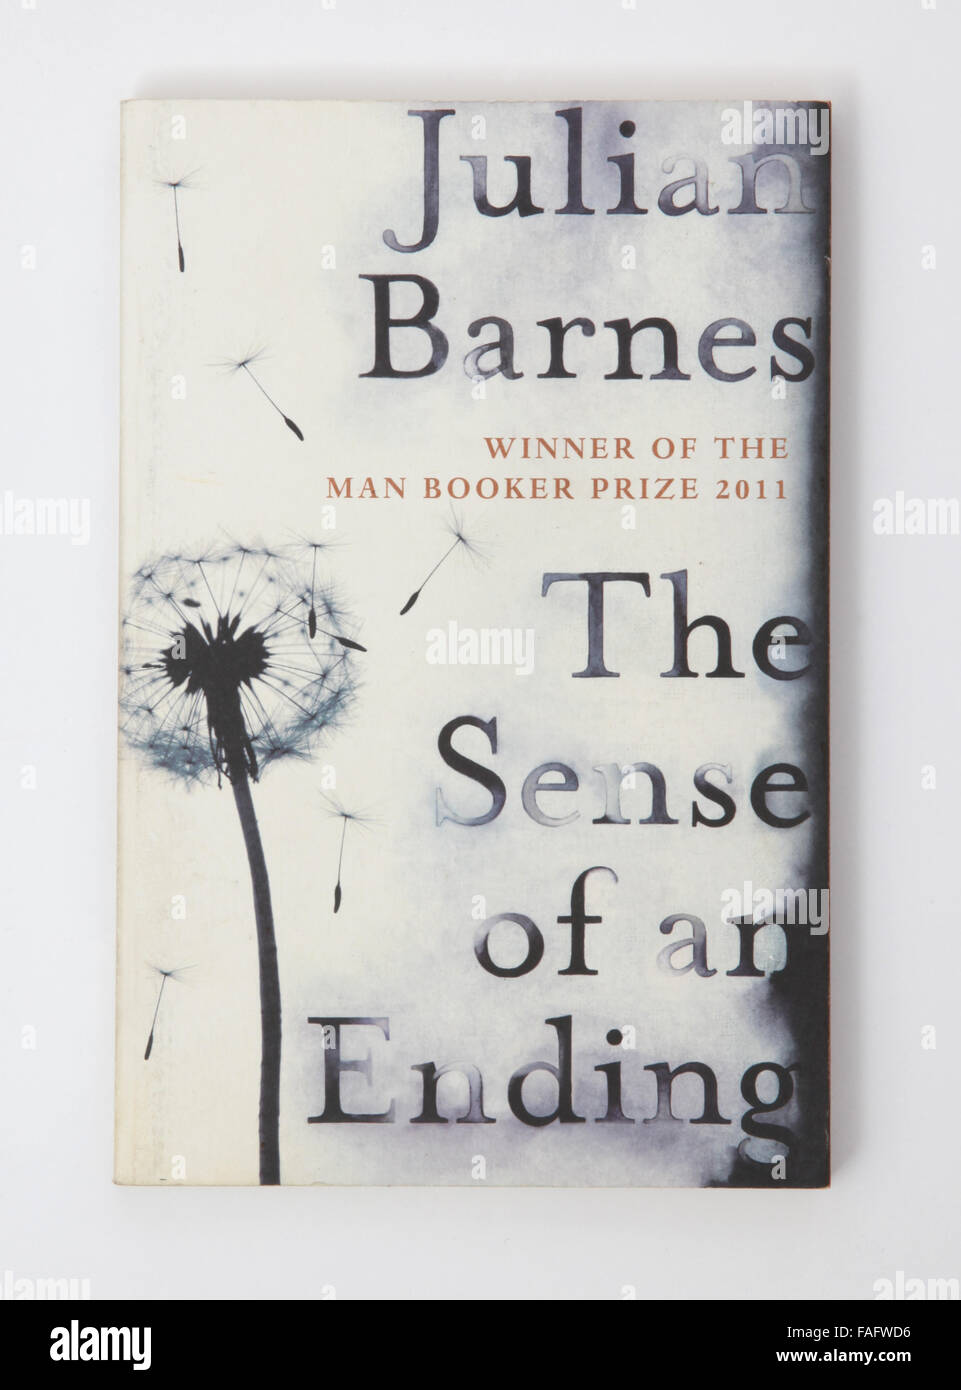 El libro - El sentido de un final por Julian Barnes. Ganador del Man Booker Prize 2011 Foto de stock